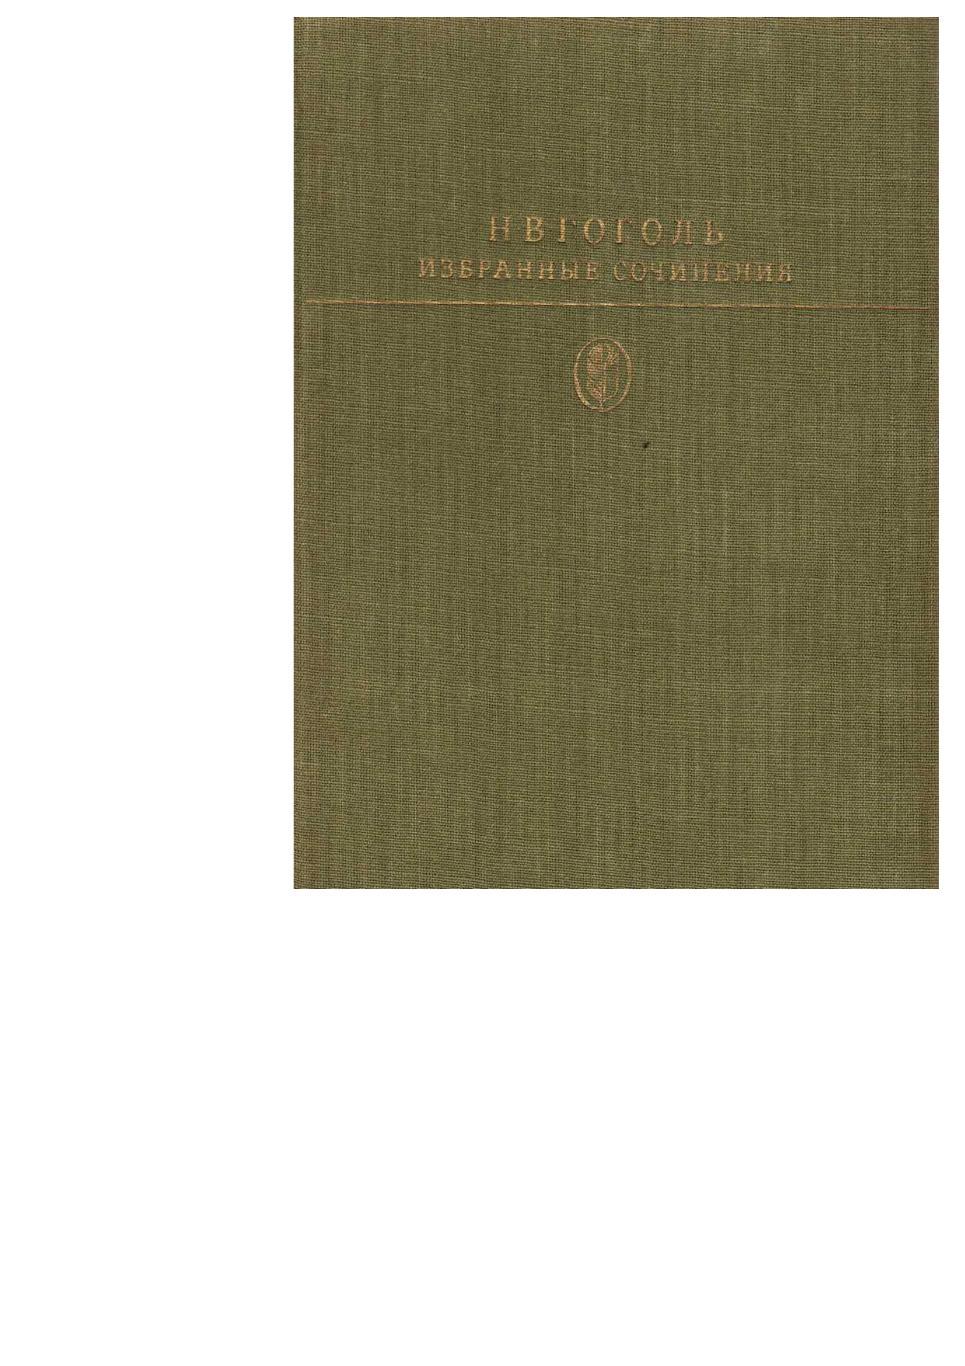 Гоголь Н.В. Избранные сочинения. – М., 1984. Библиотека классики.